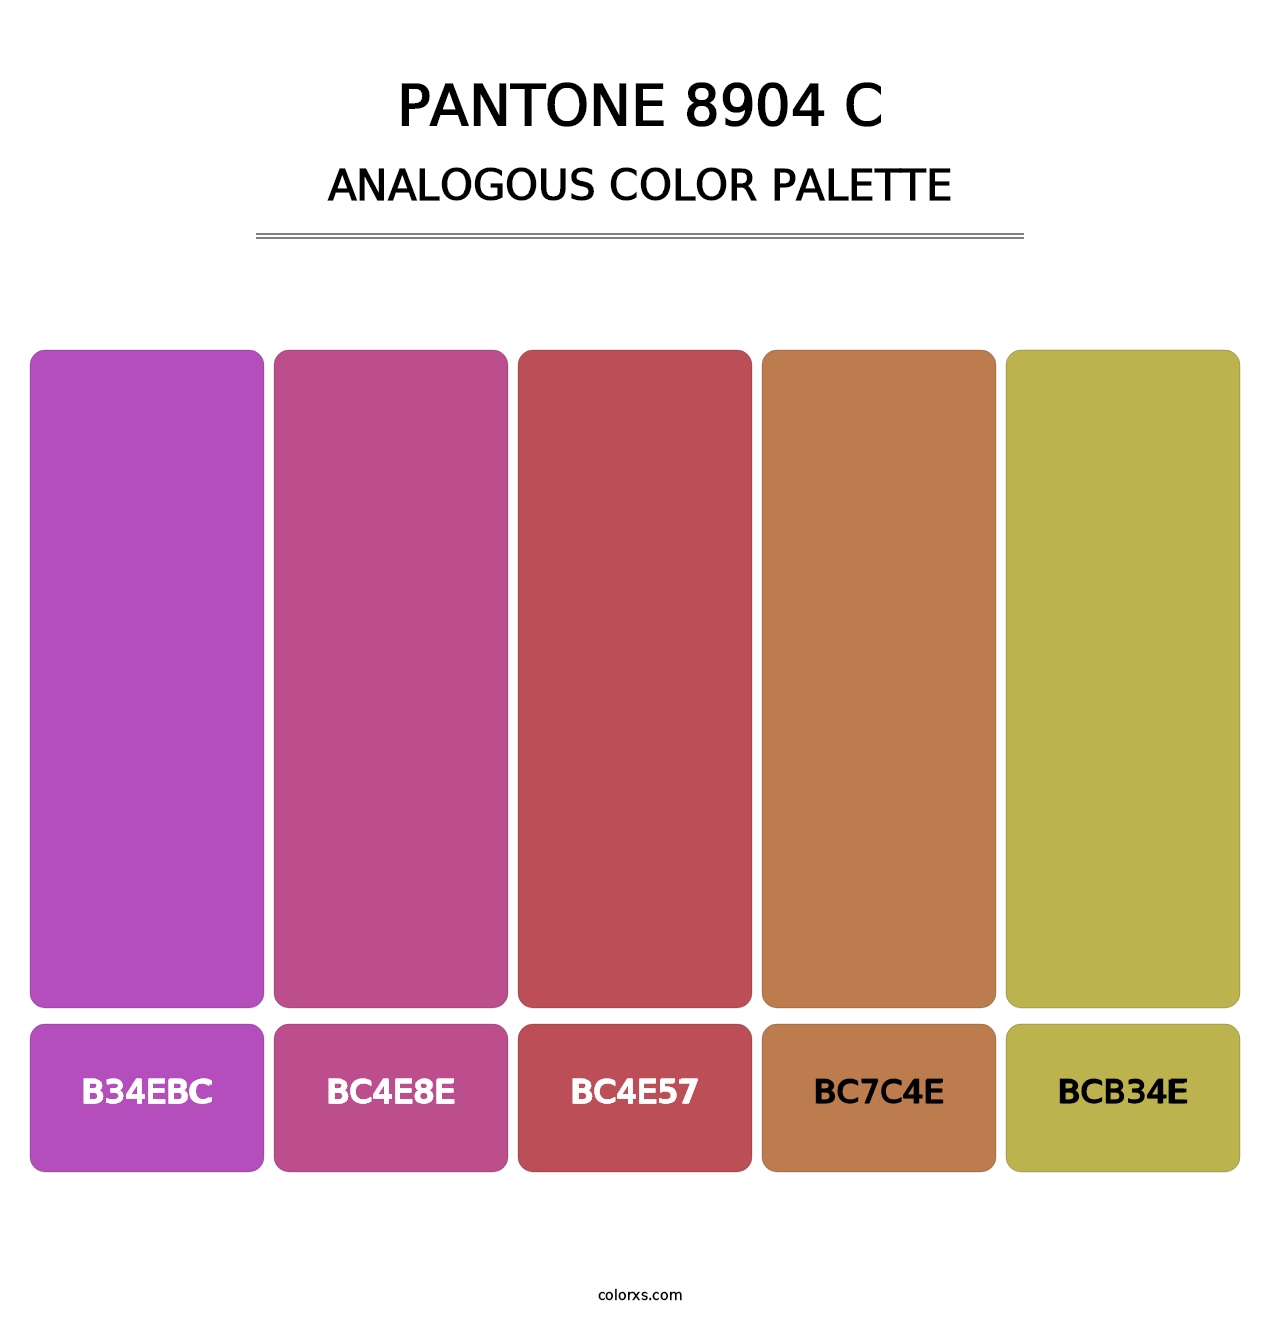 PANTONE 8904 C - Analogous Color Palette